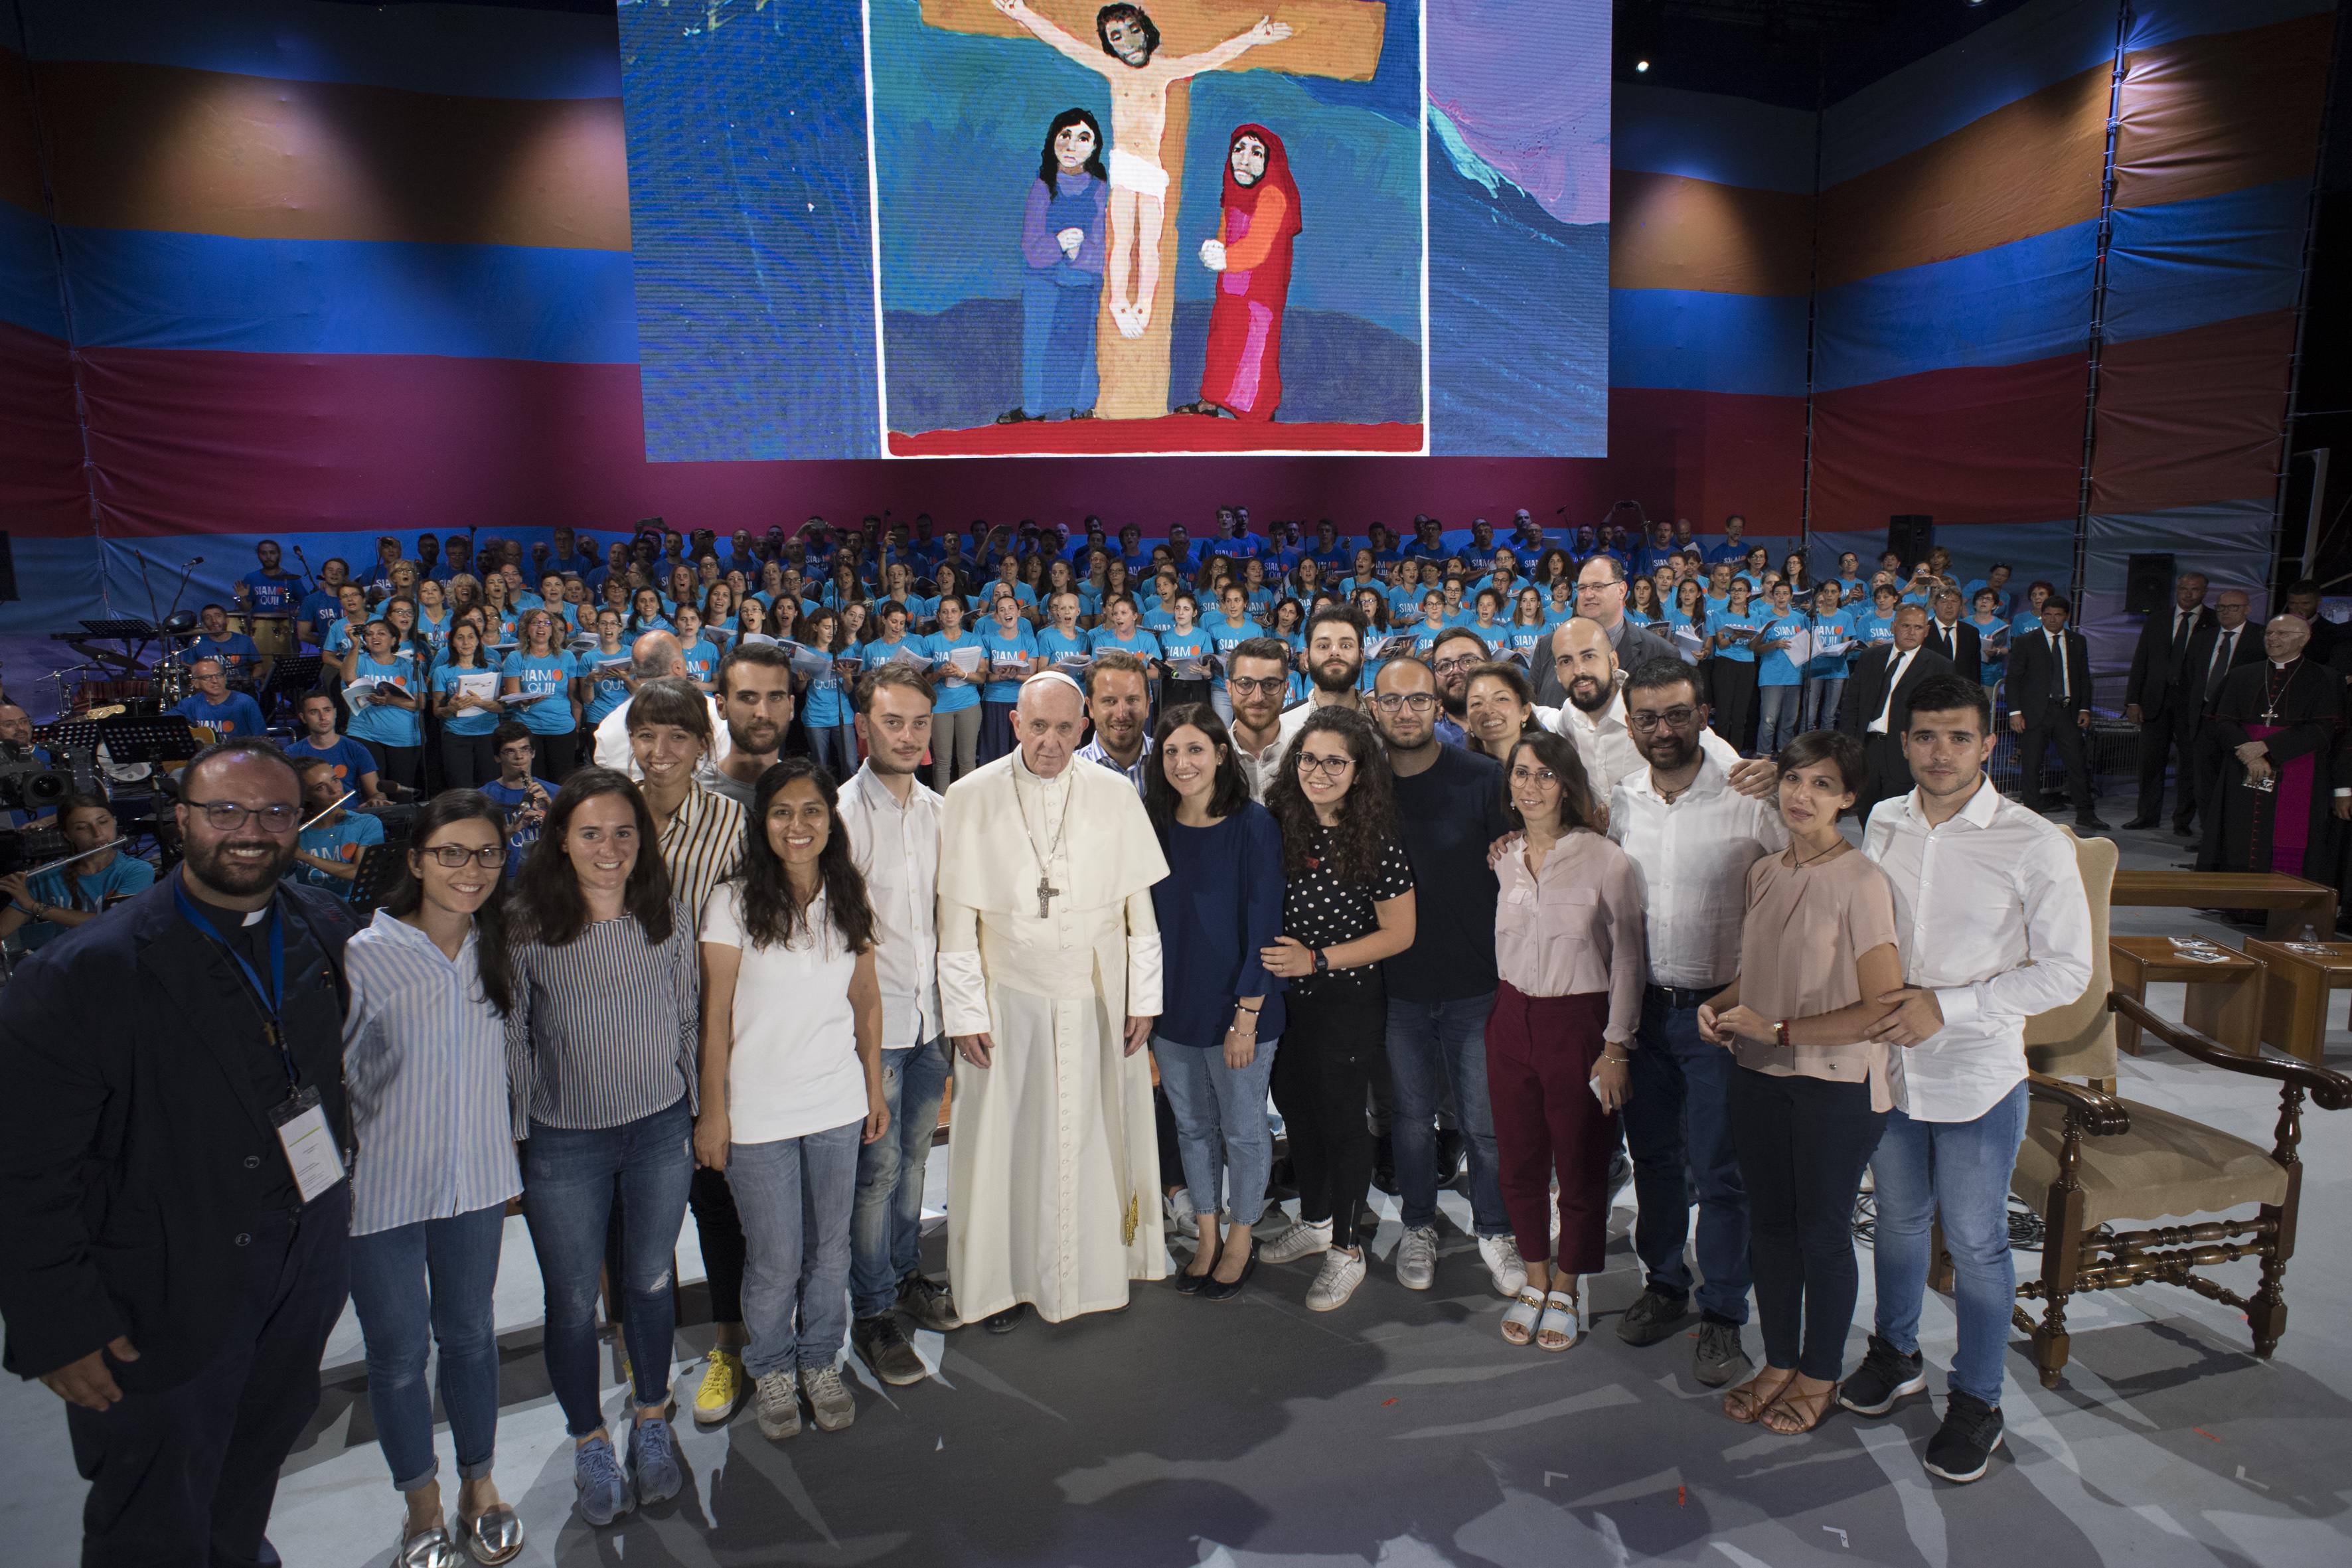 Veillée de prière avec les jeunes, Circo Massimo, 11/8/2018 © Vatican Media